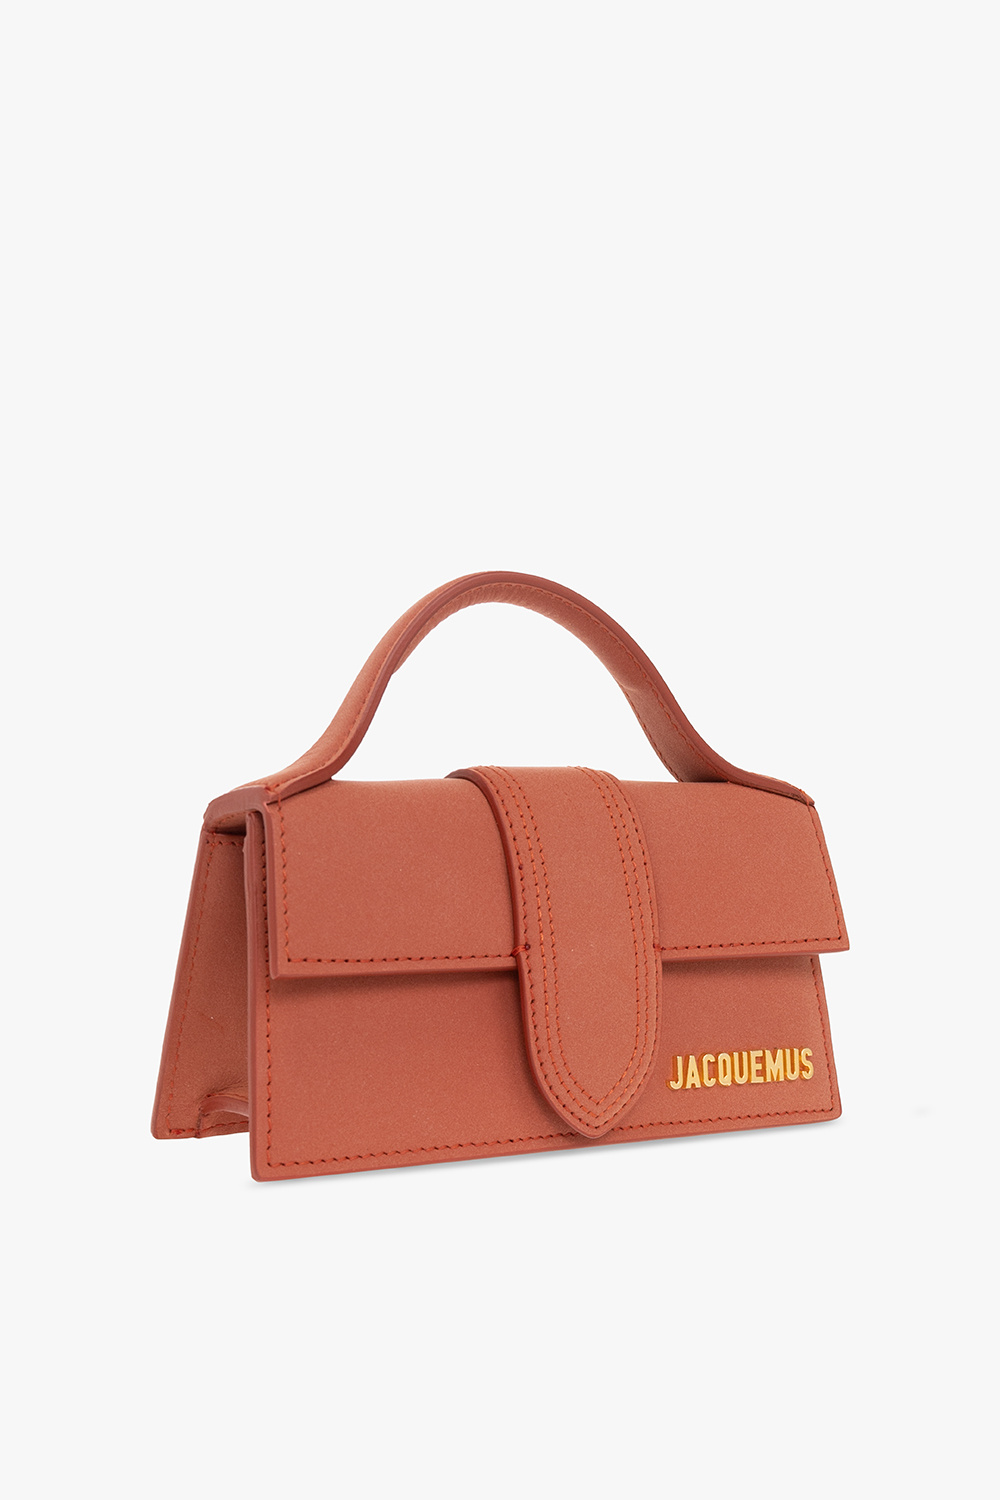 Jacquemus ‘Le Bambino’ shoulder Schouler bag